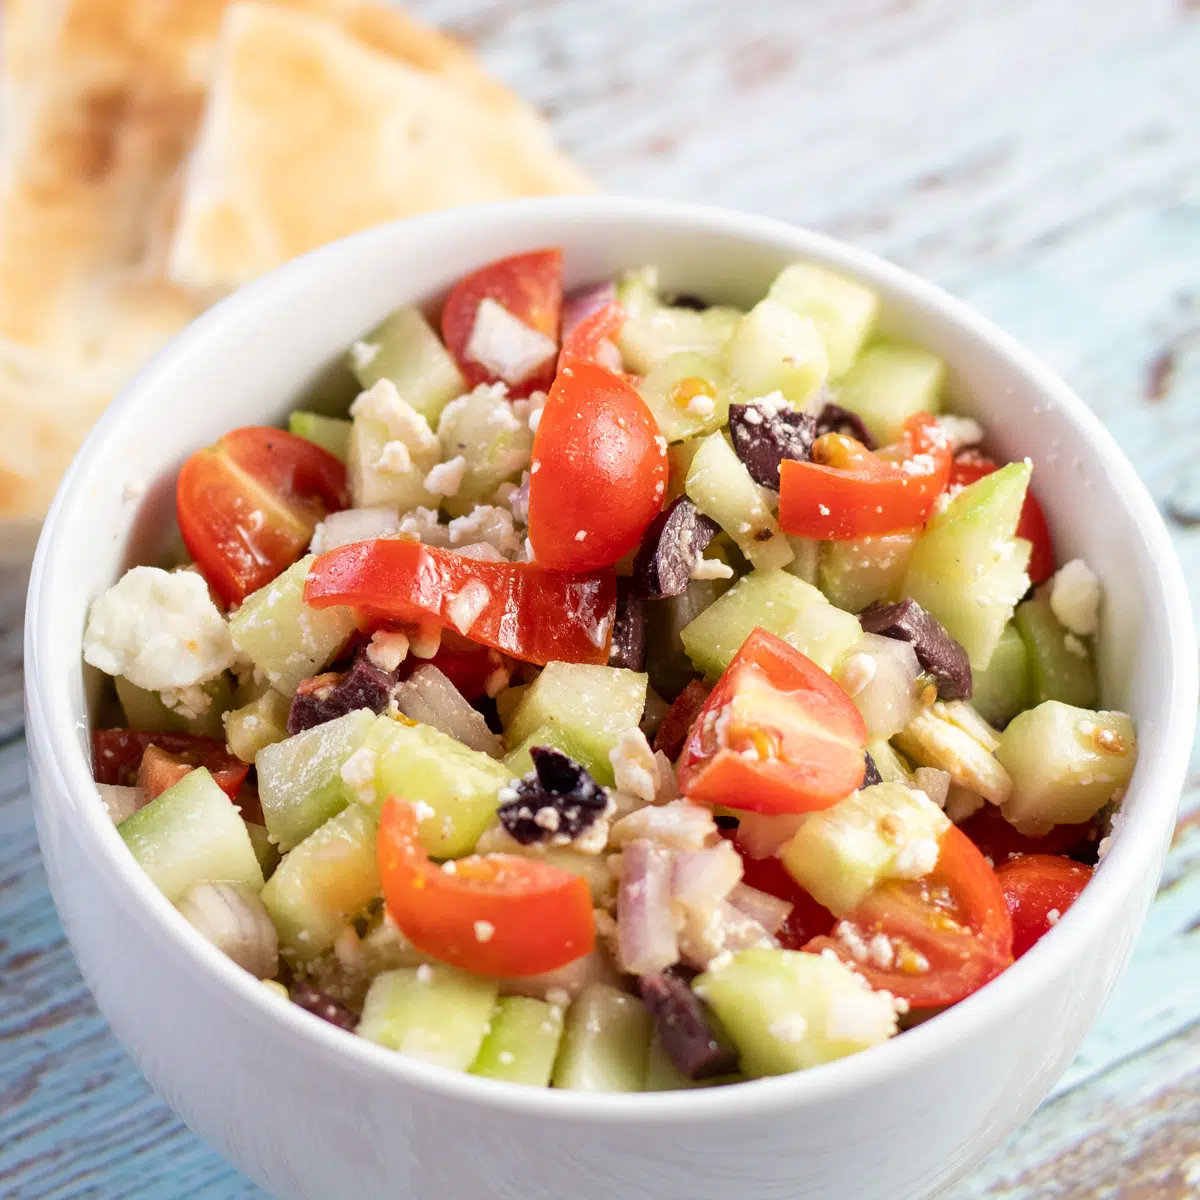 Najbolja grčka salata poslužena u bijeloj zdjeli s trokutima pita kruha u pozadini.